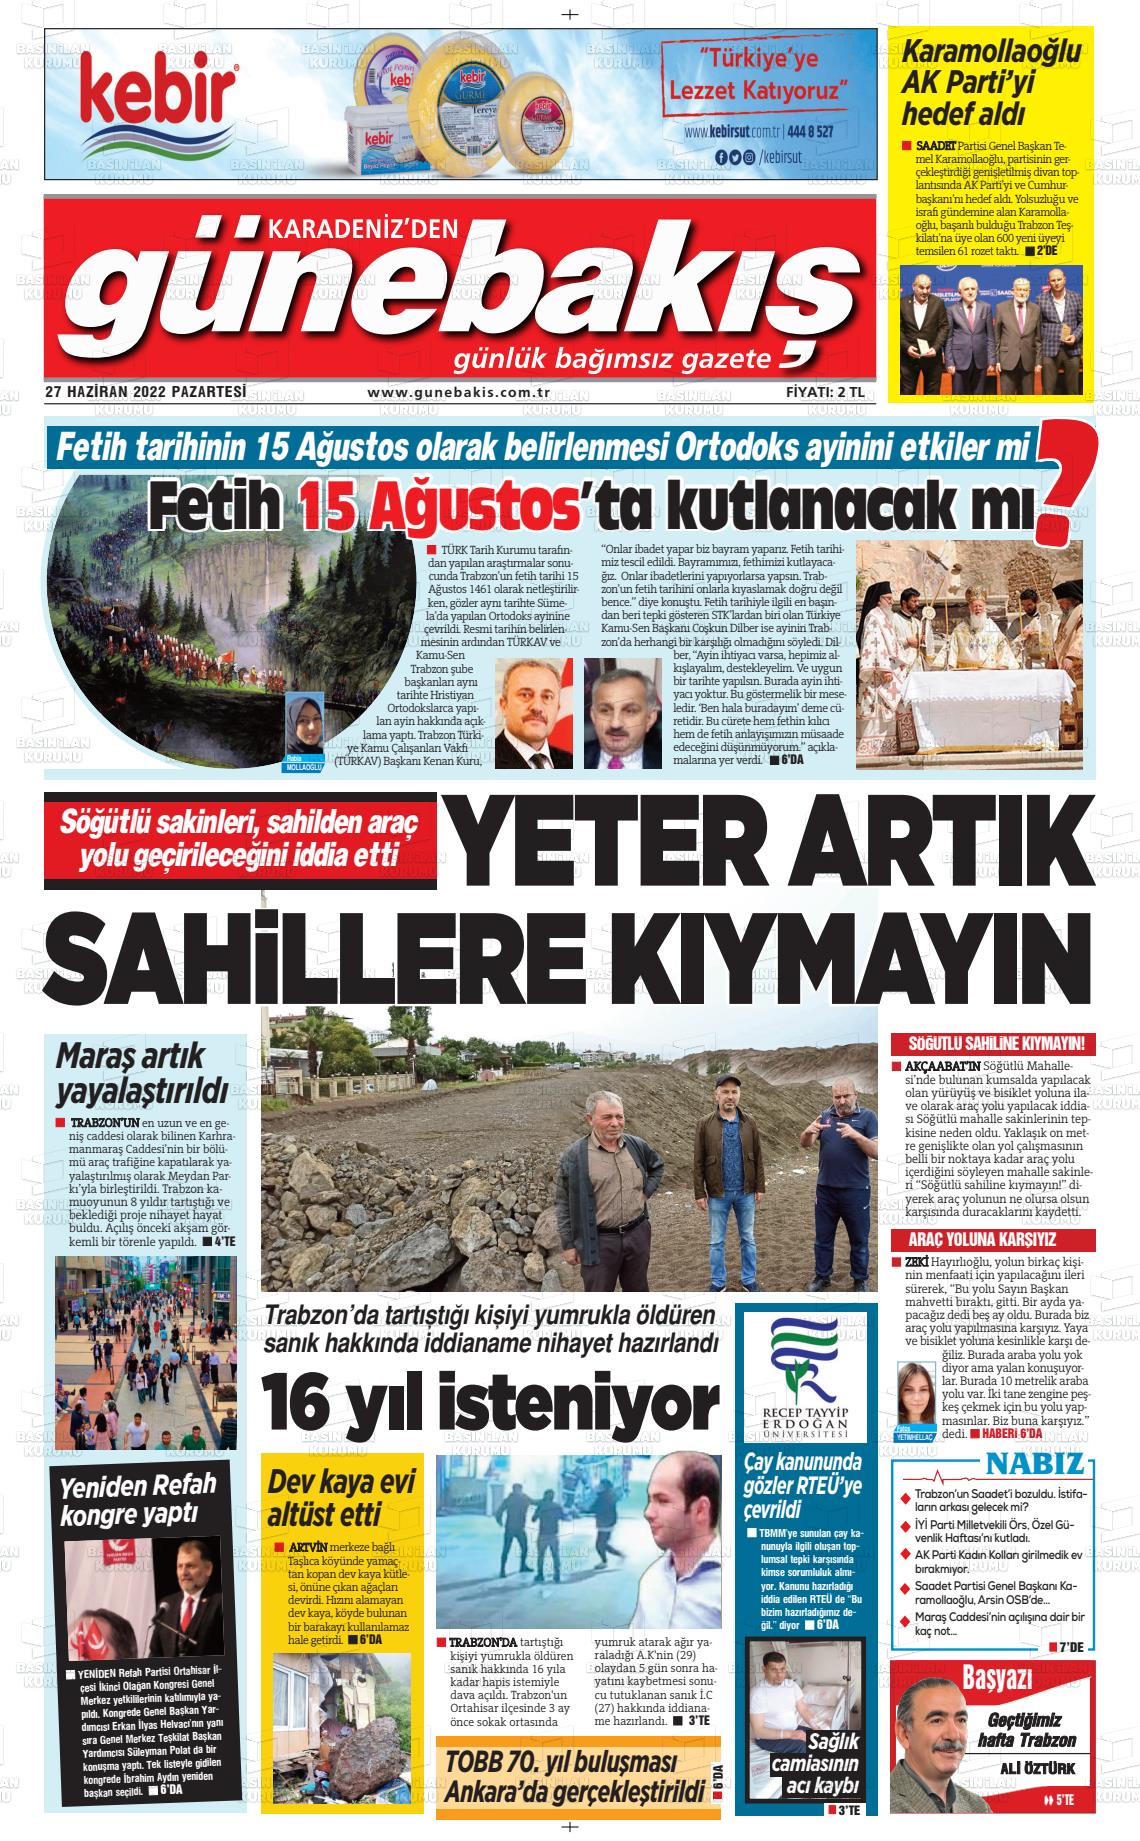 27 Haziran 2022 Günebakış Gazete Manşeti